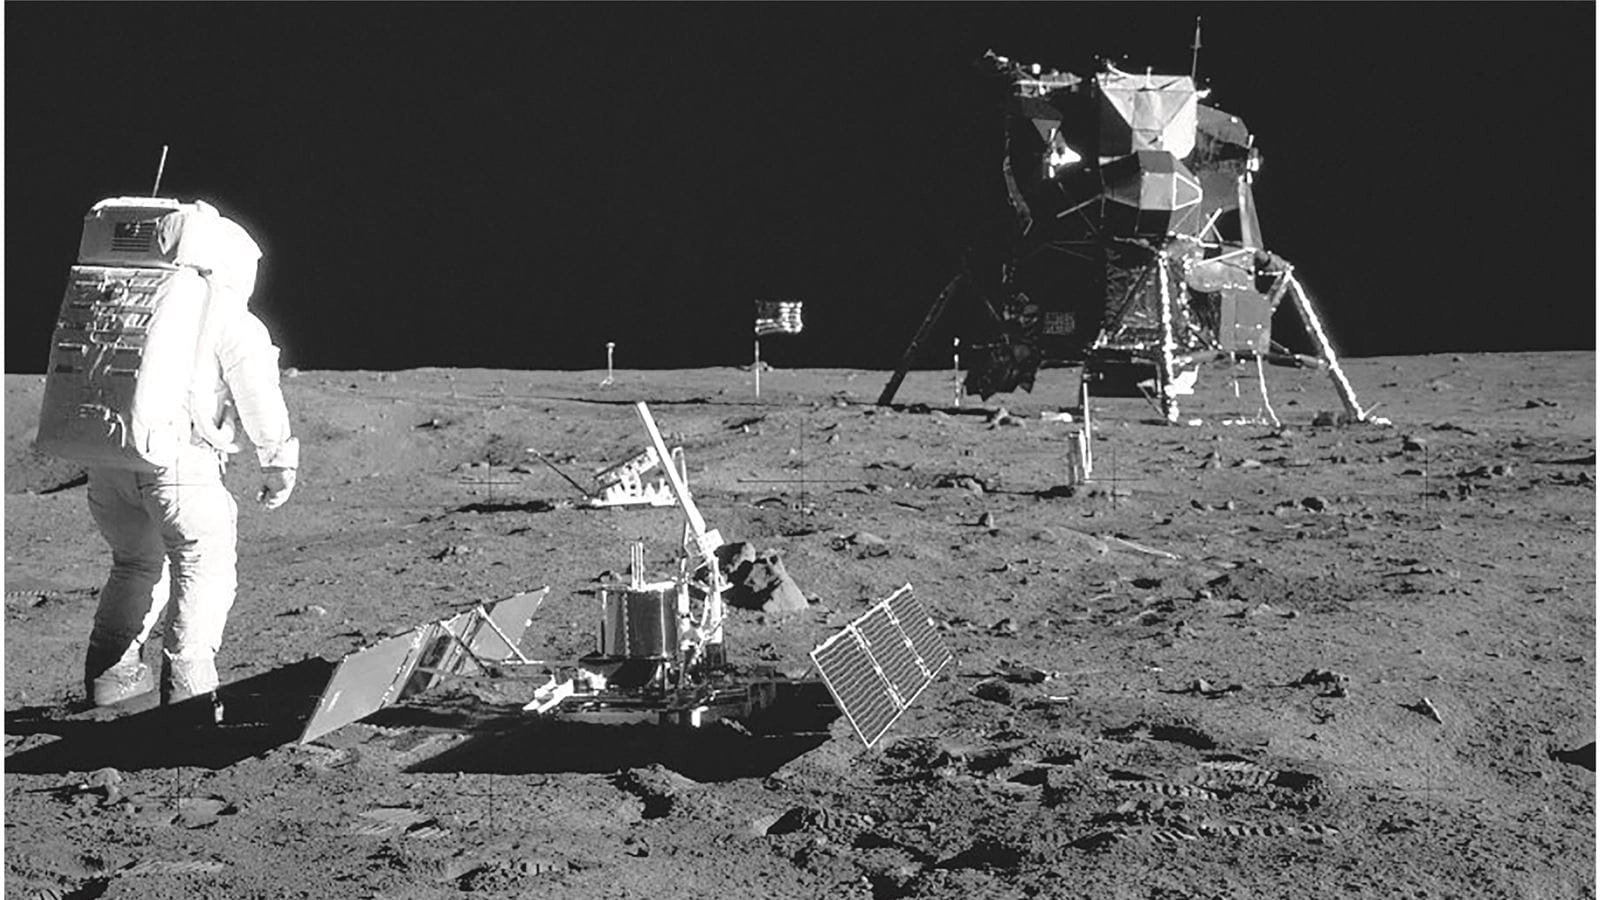 Collins Aerospace, o divizie a Raytheon Technologies, a construit sistemele de susținere a vieții pentru costumele spațiale care i-au dus pe primii astronauți pe Lună. 